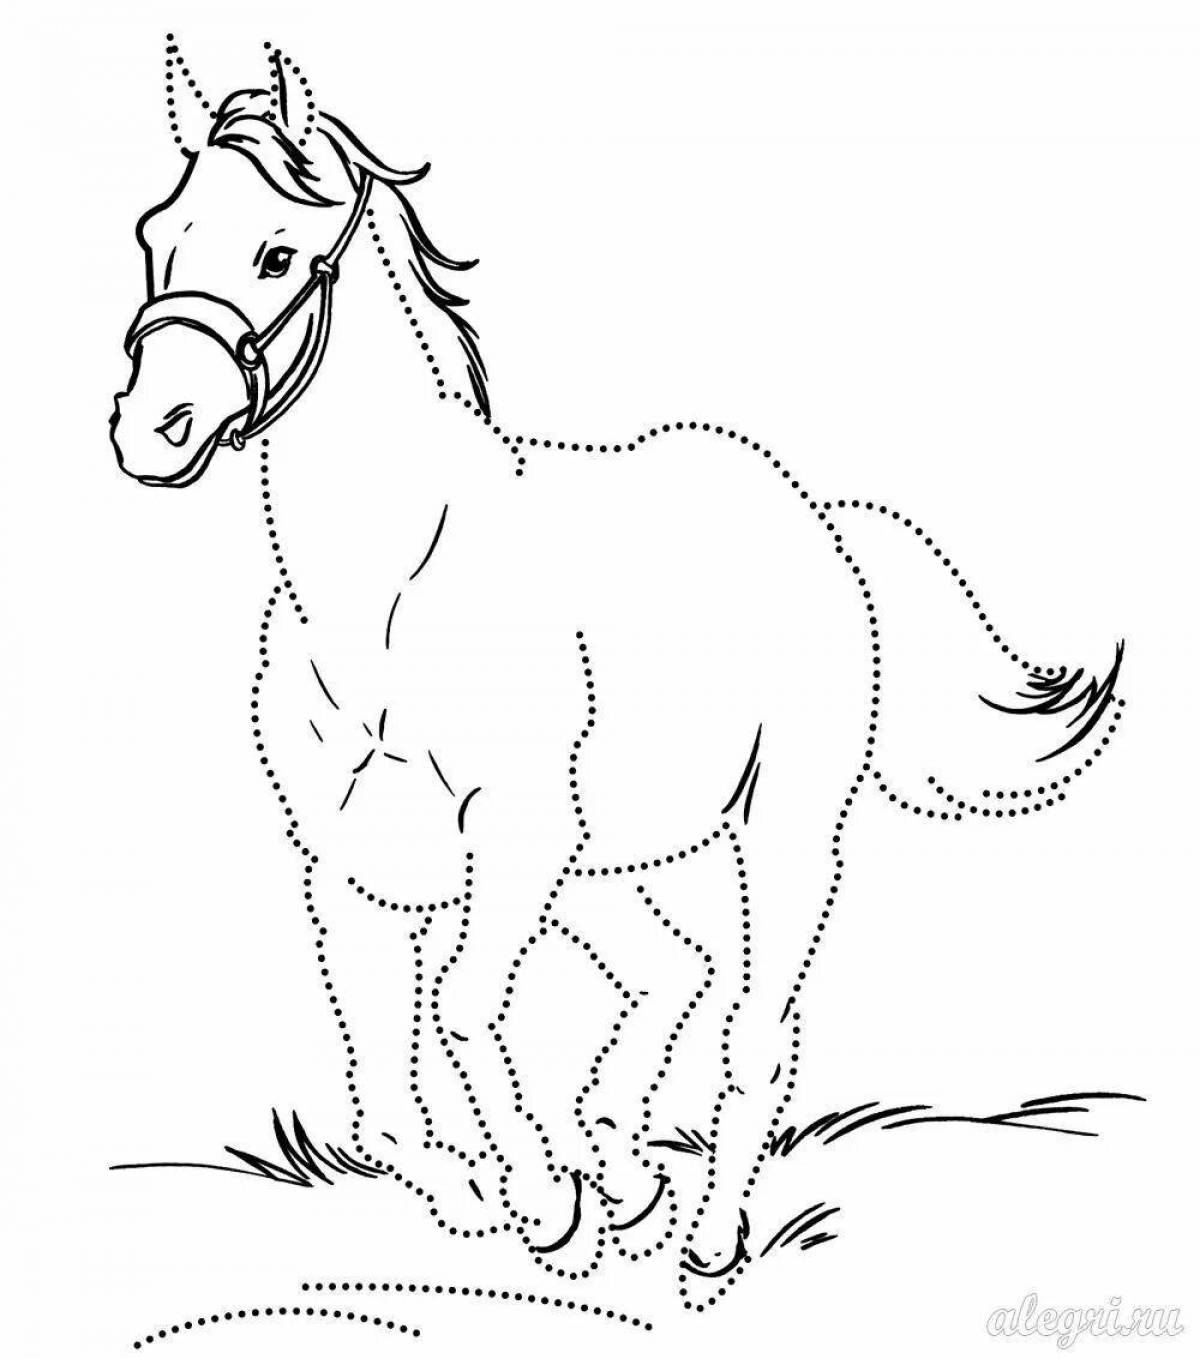 Роскошная раскраска долговязой лошади